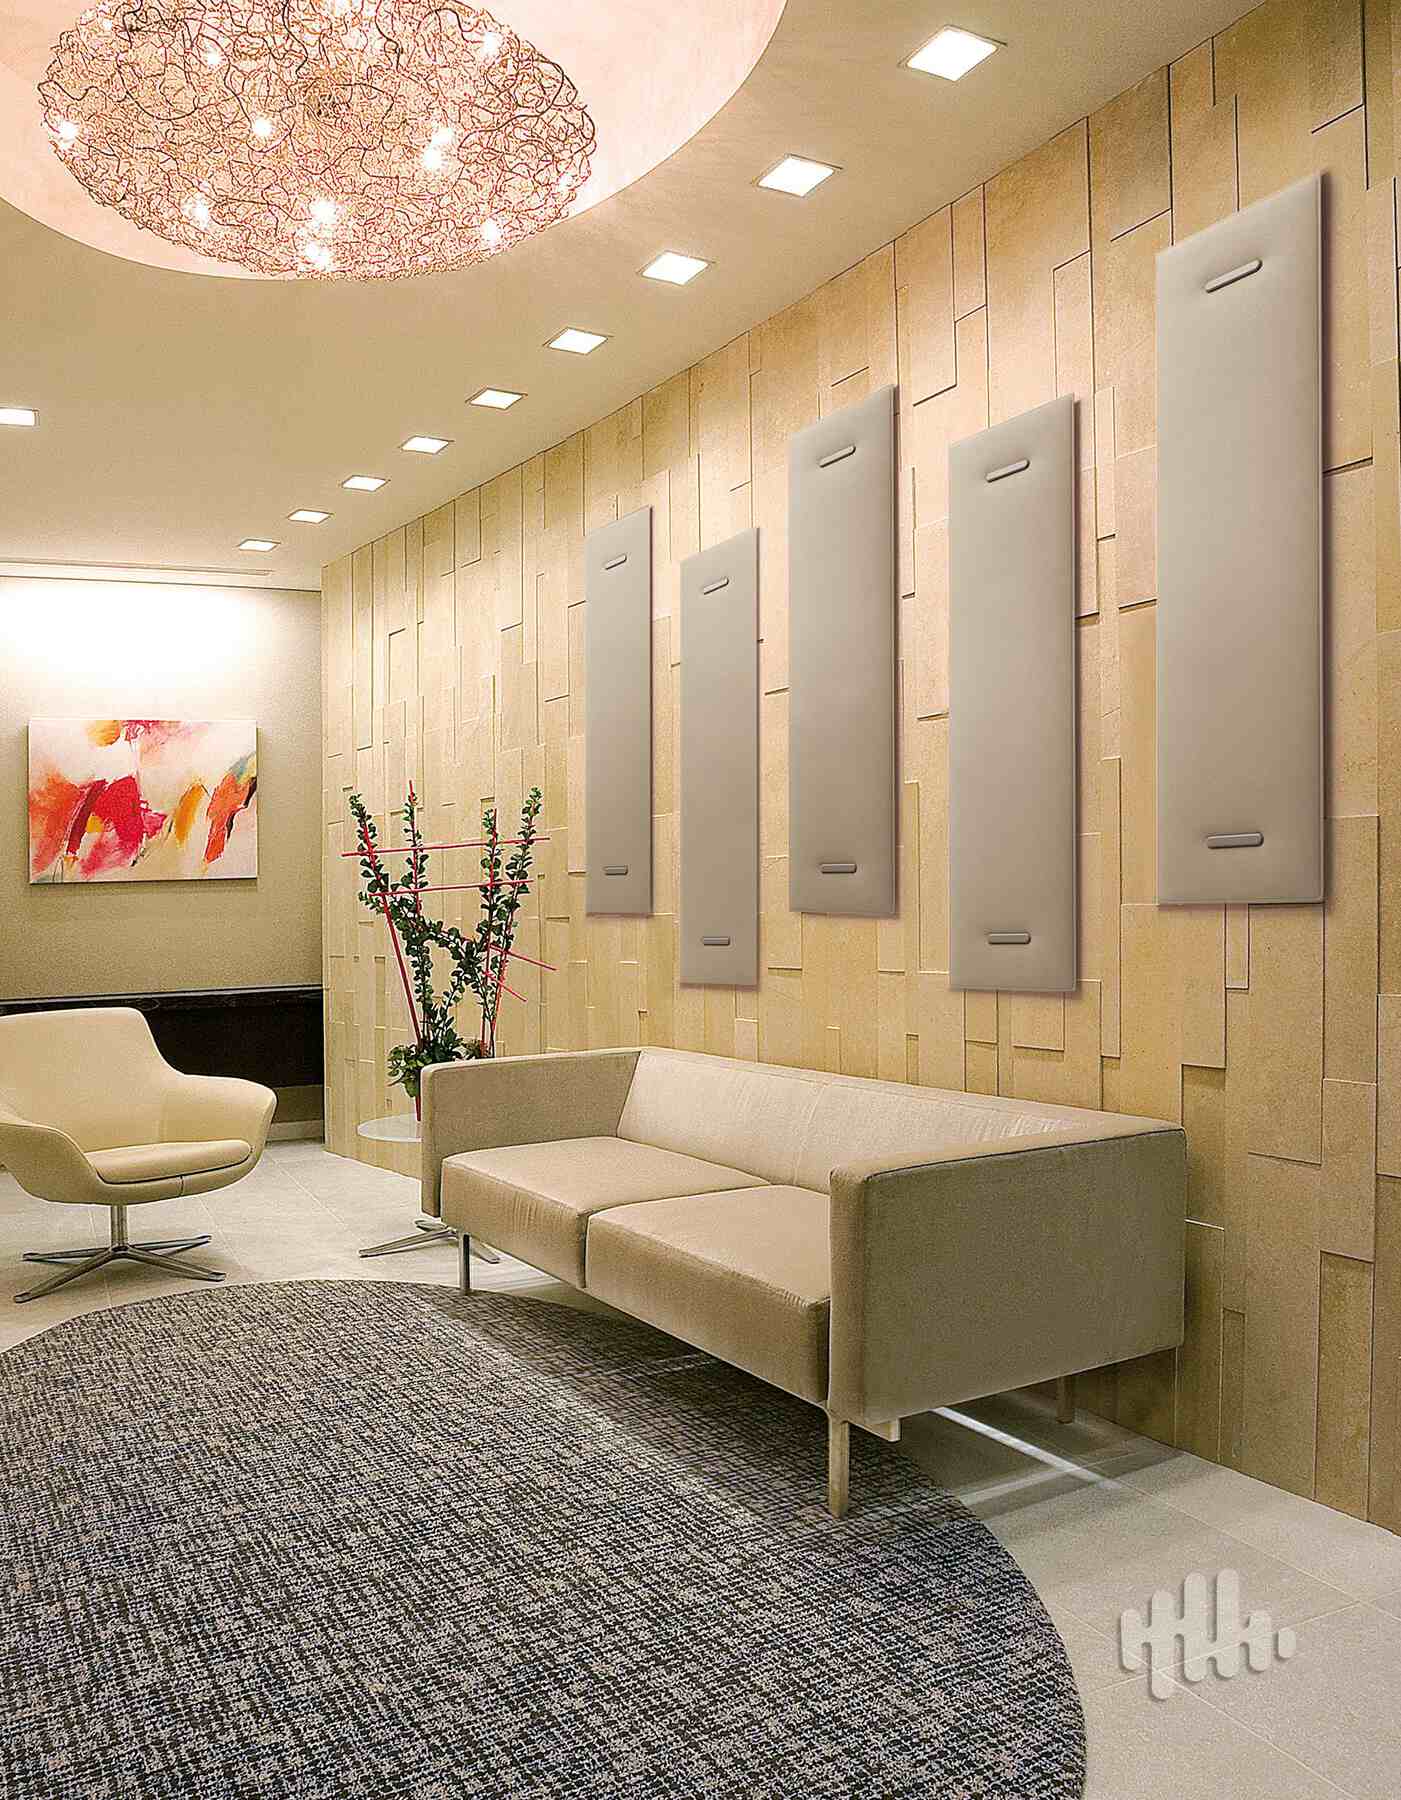 Panneau acoustique décoratif en 30 designs mur et plafond